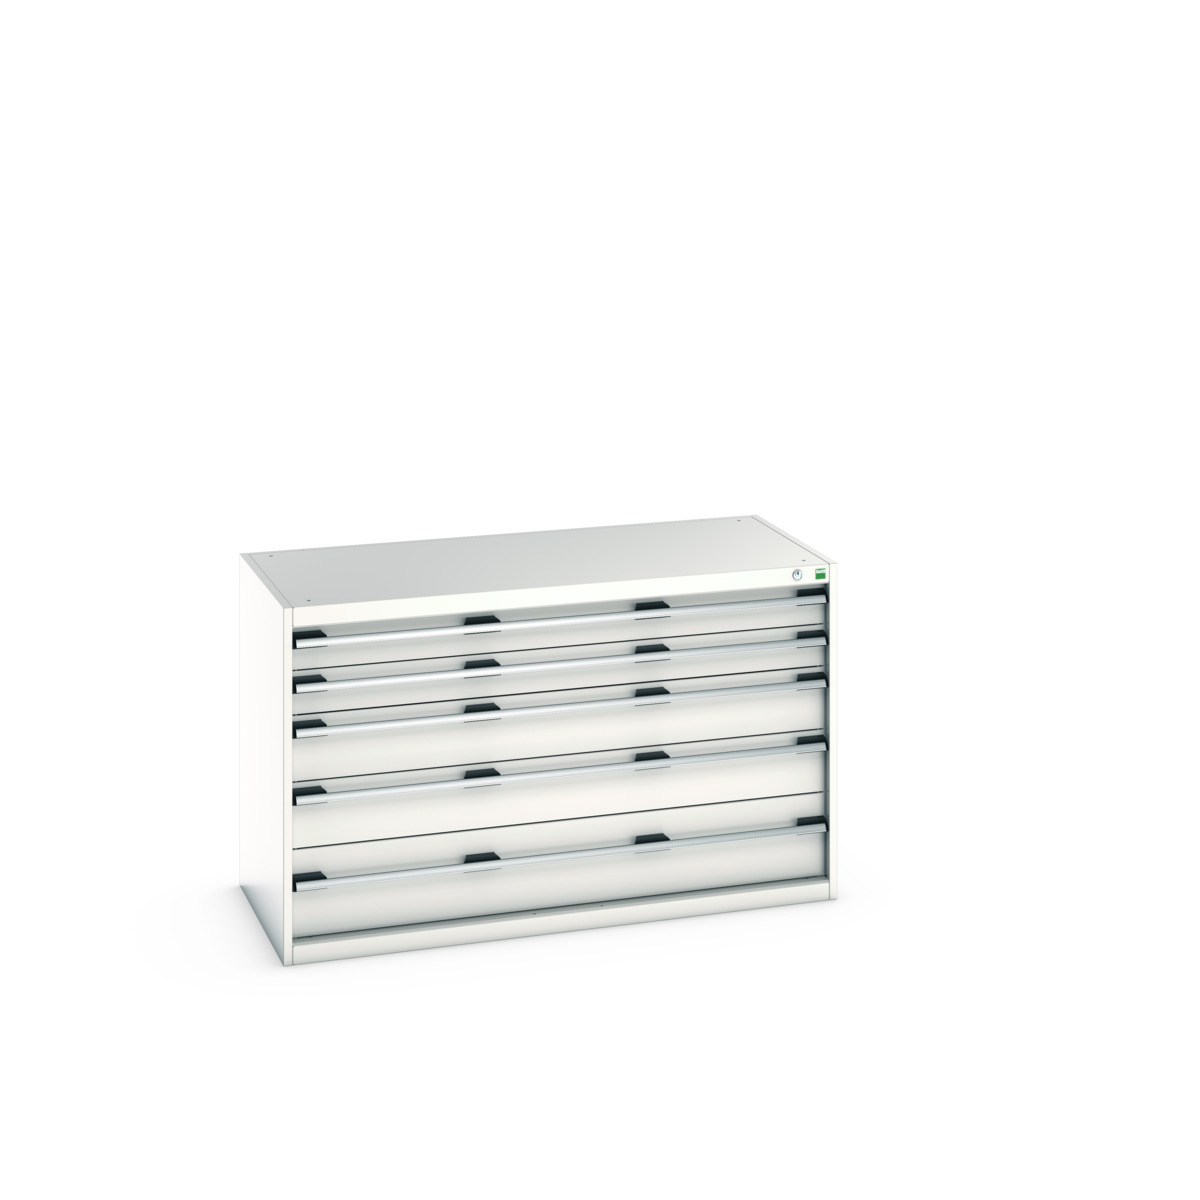 40022107.16V - cubio drawer cabinet